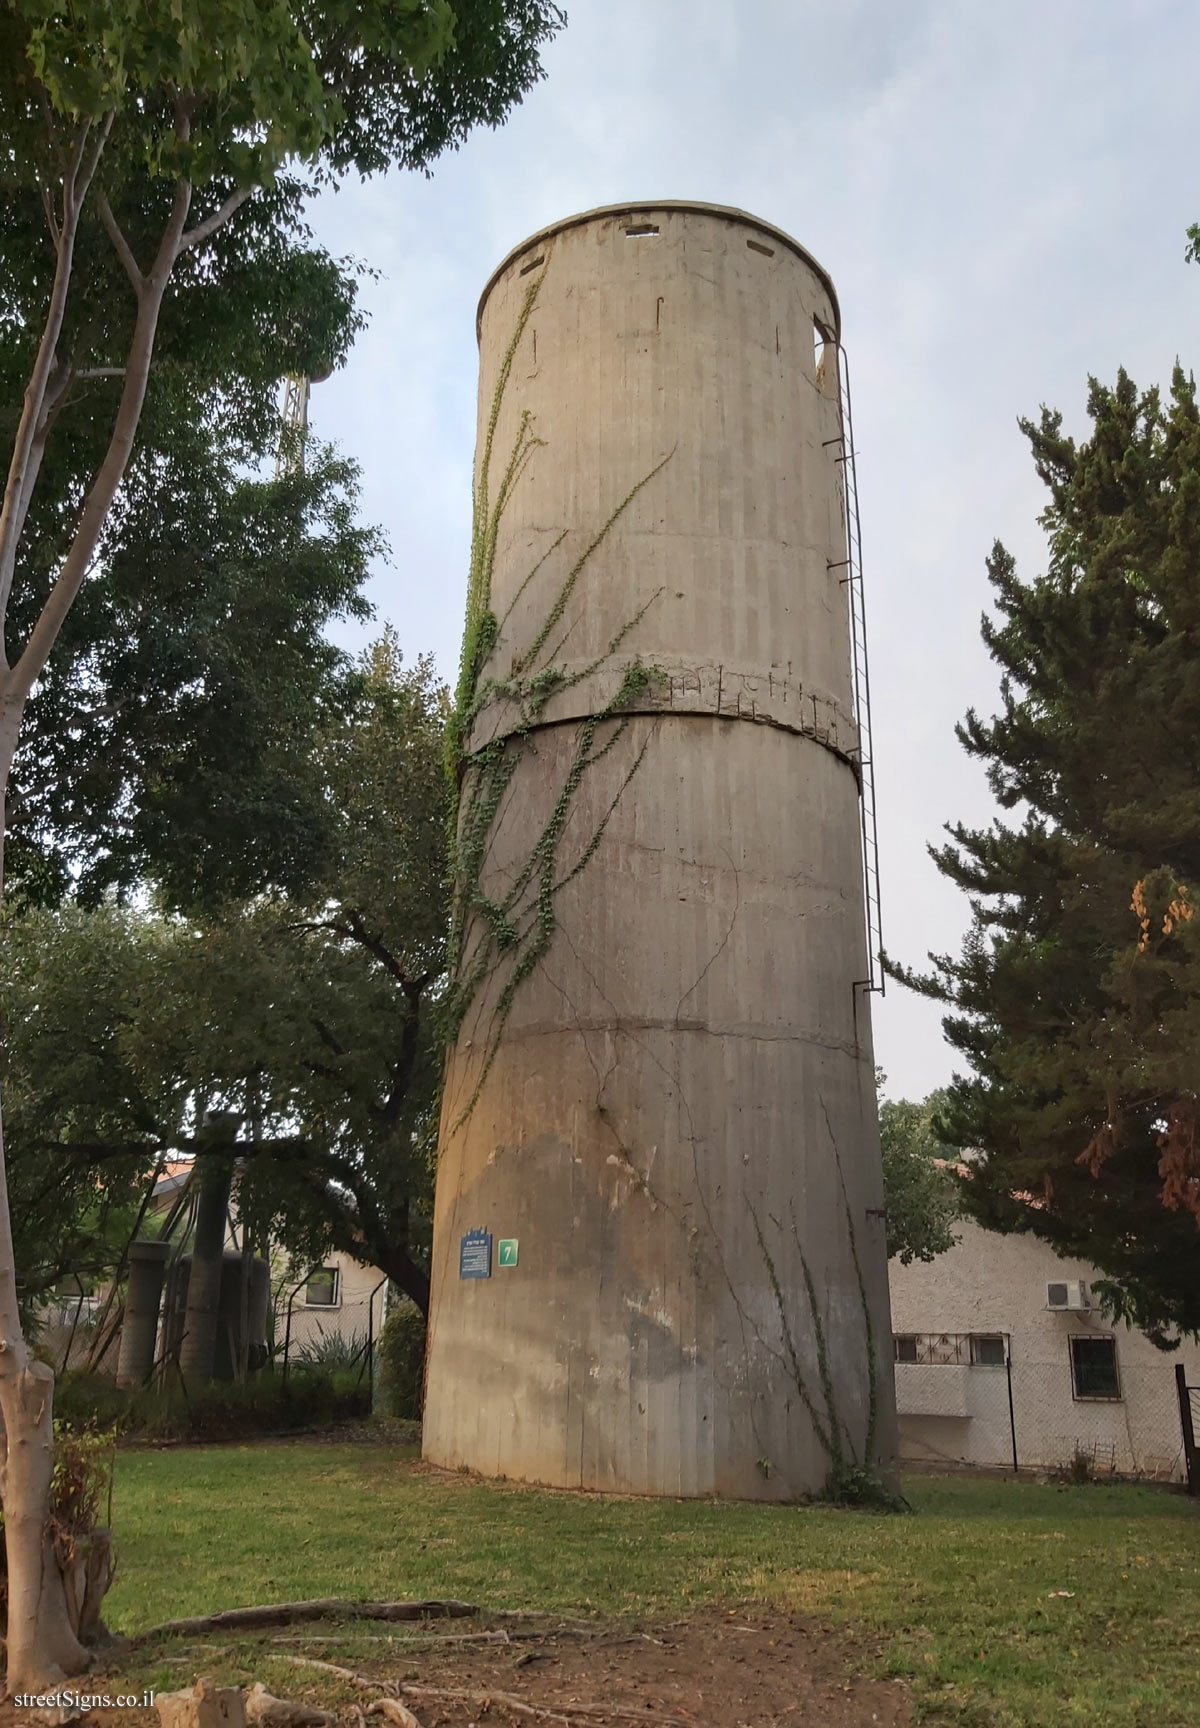 Heritage Sites in Israel - Water tower site - Zeidman St 7, Kiryat Ono, Israel